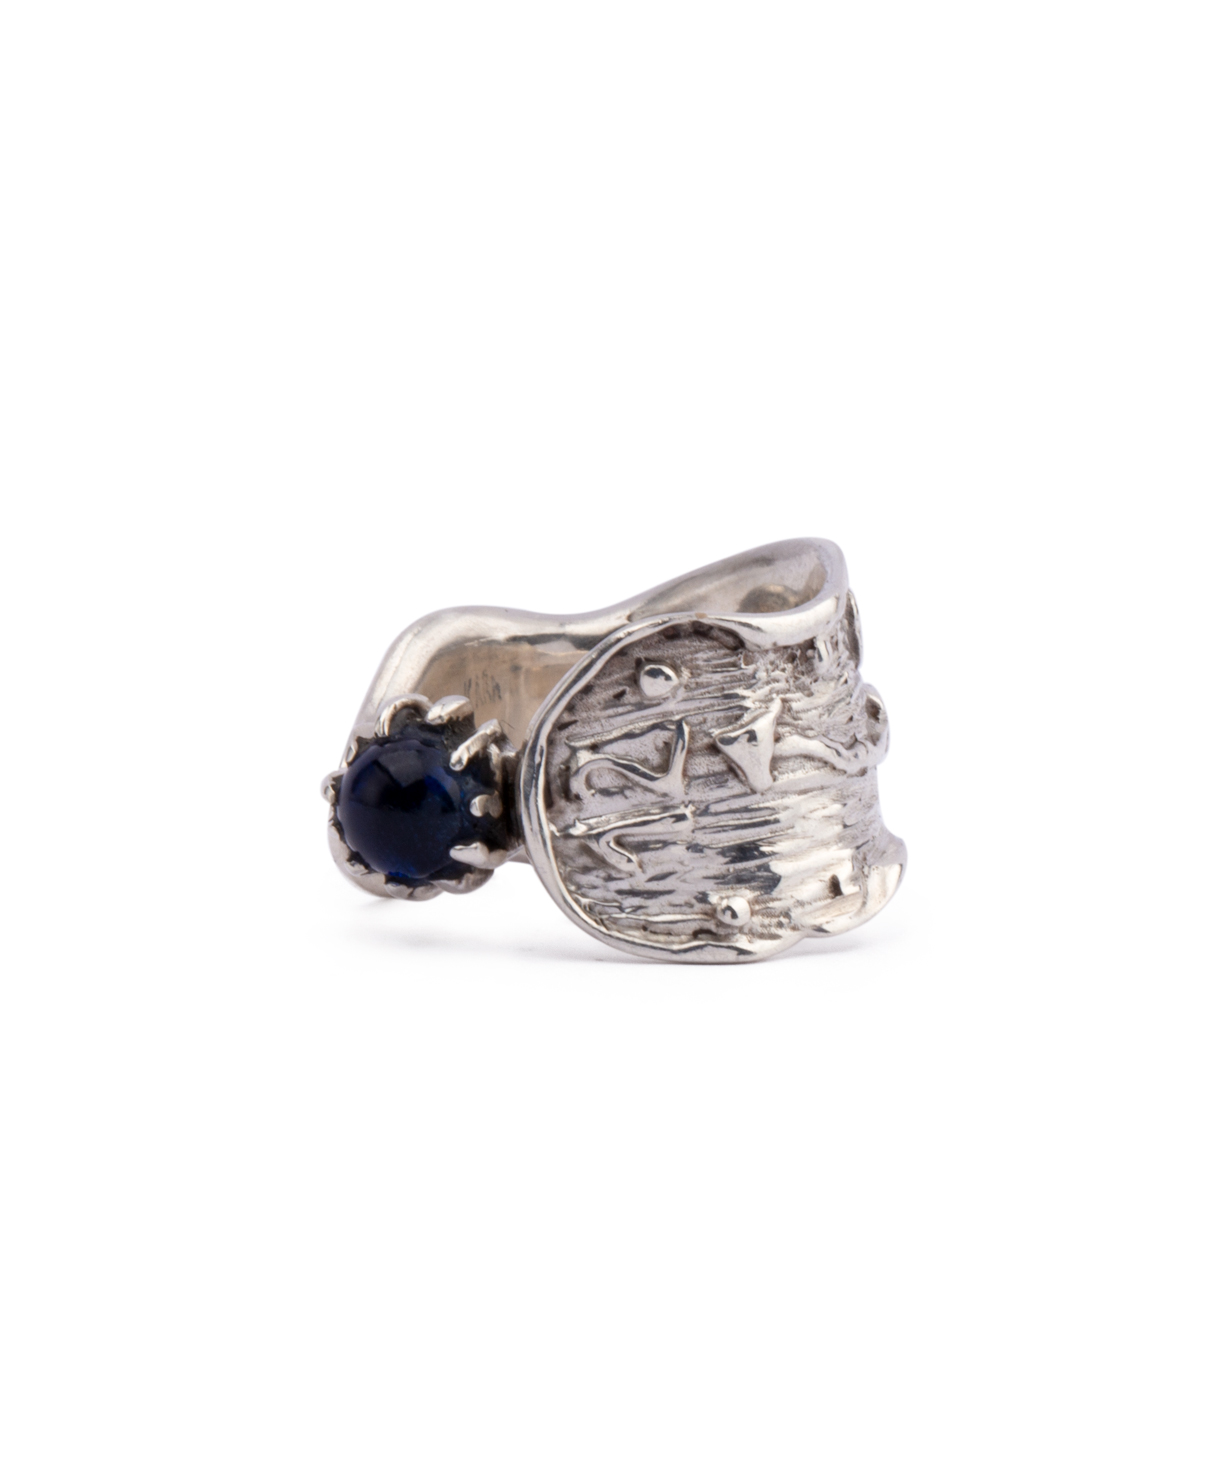 Ring `Kara Silver` Dali's Persistence of Memory